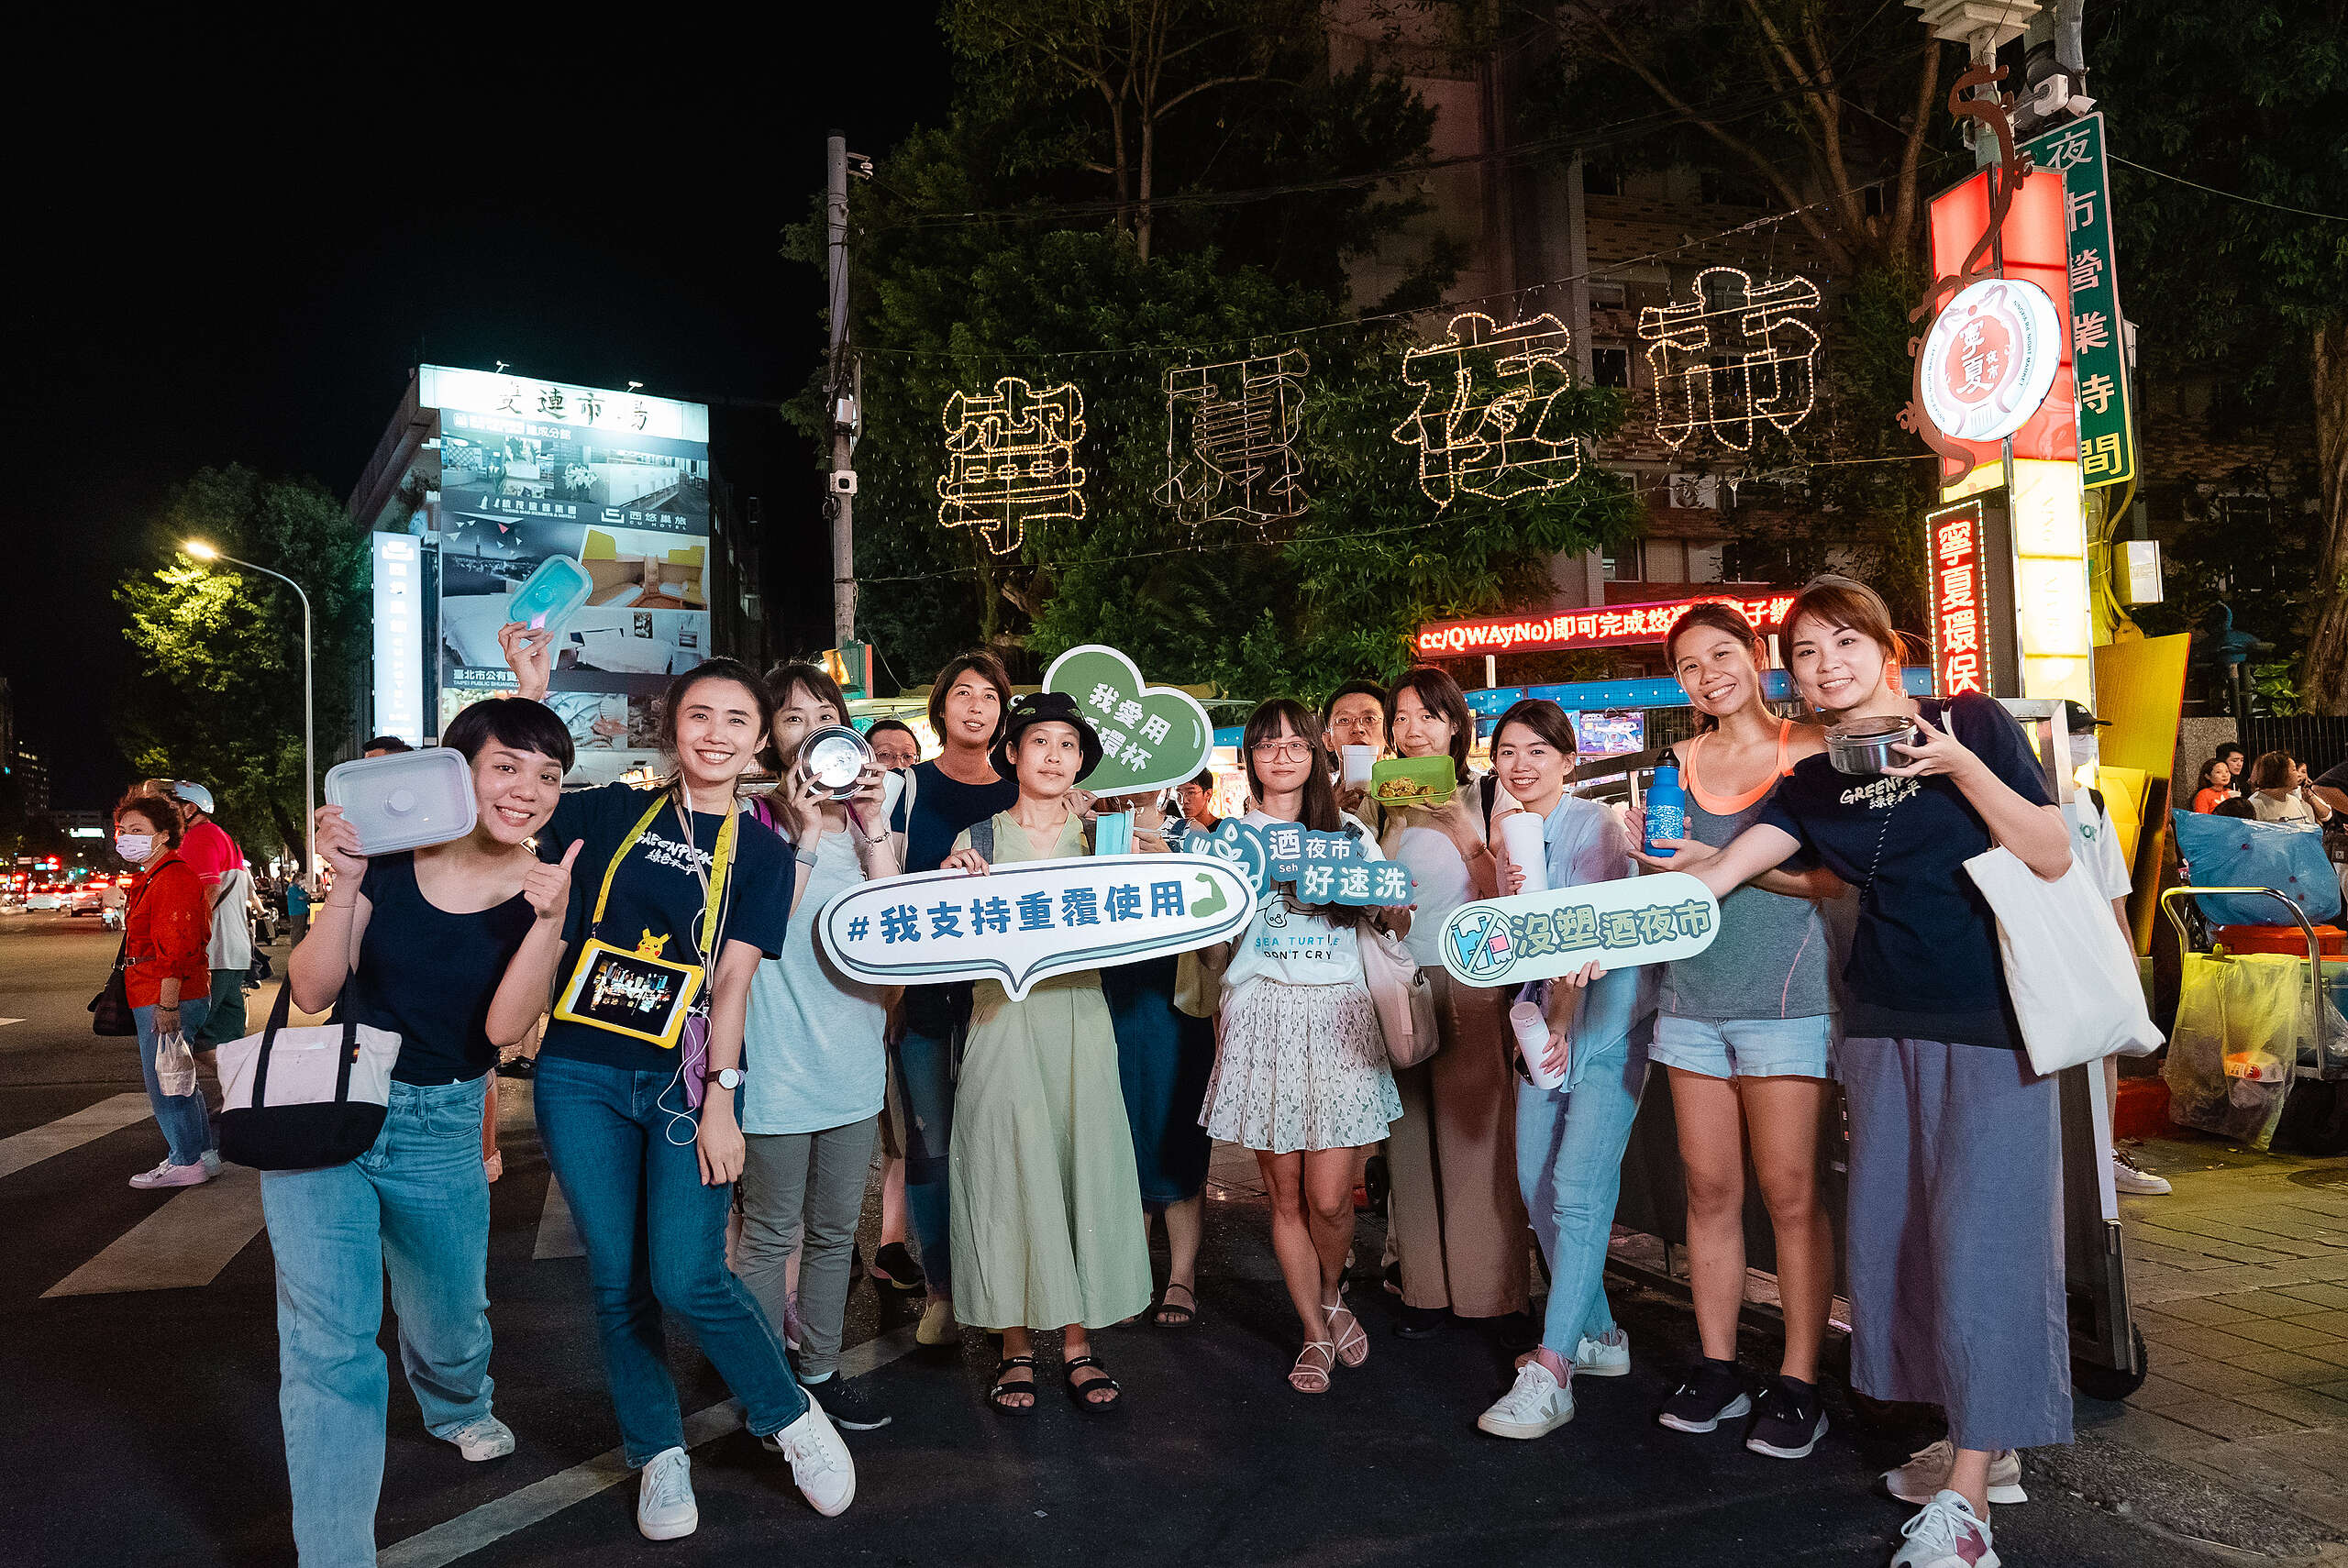 「好速洗」鎖定臺灣在地美食的聚集地——夜市，希望透過提供環保餐具給外帶餐點的消費者，讓民眾在享用美食的同時，也能用微小的改變實踐地球友善。